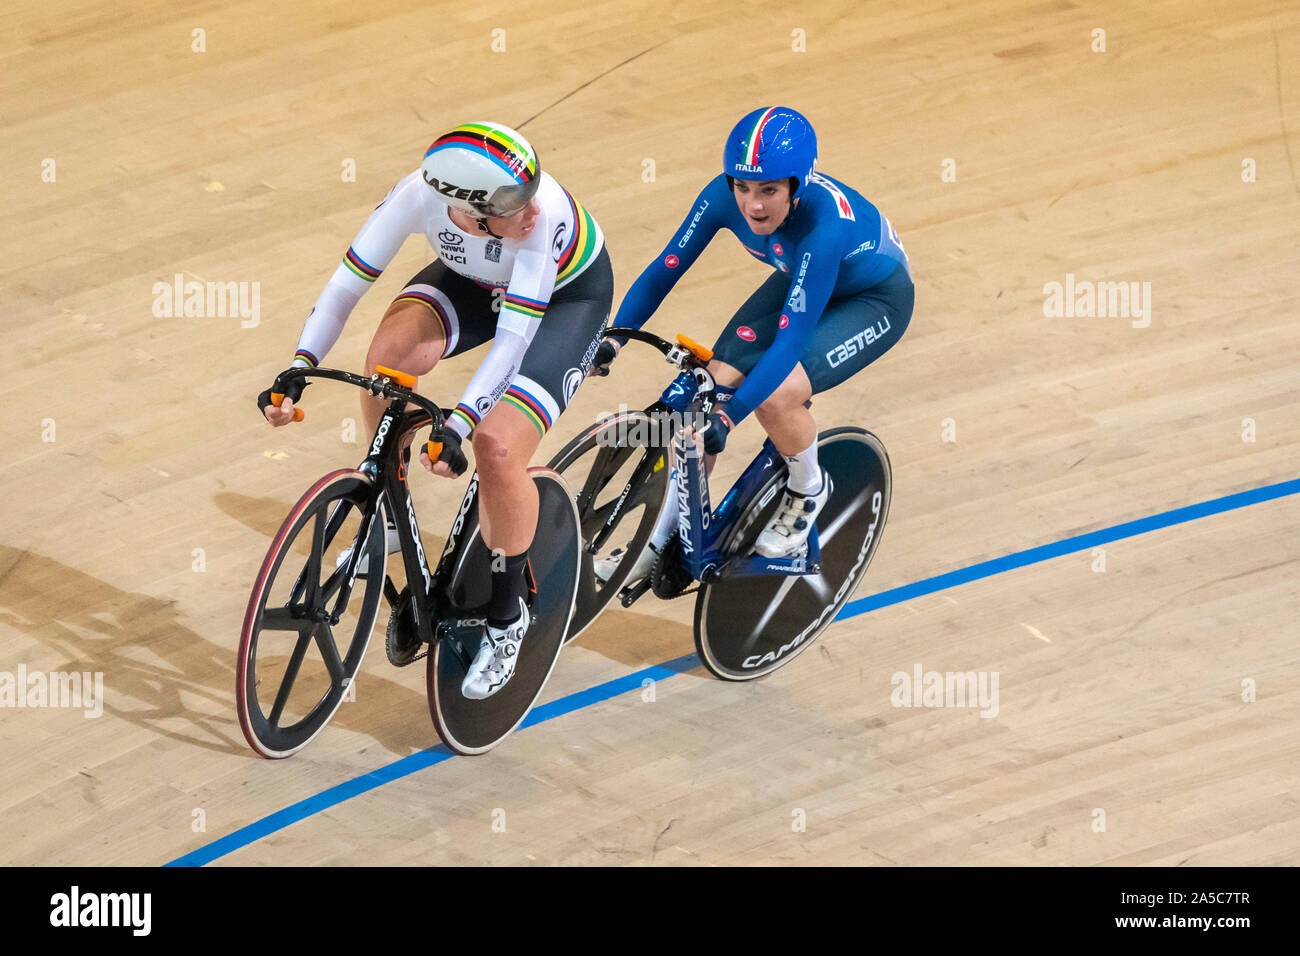 Kirsten Wild NED und Letizia Paternoster ITA während der uec Titel Radfahren Europäische Meisterschaft am Oktober, 18 2019 in Apeldoorn, Niederlande. (Foto von SCS/Sander Chamid) Stockfoto